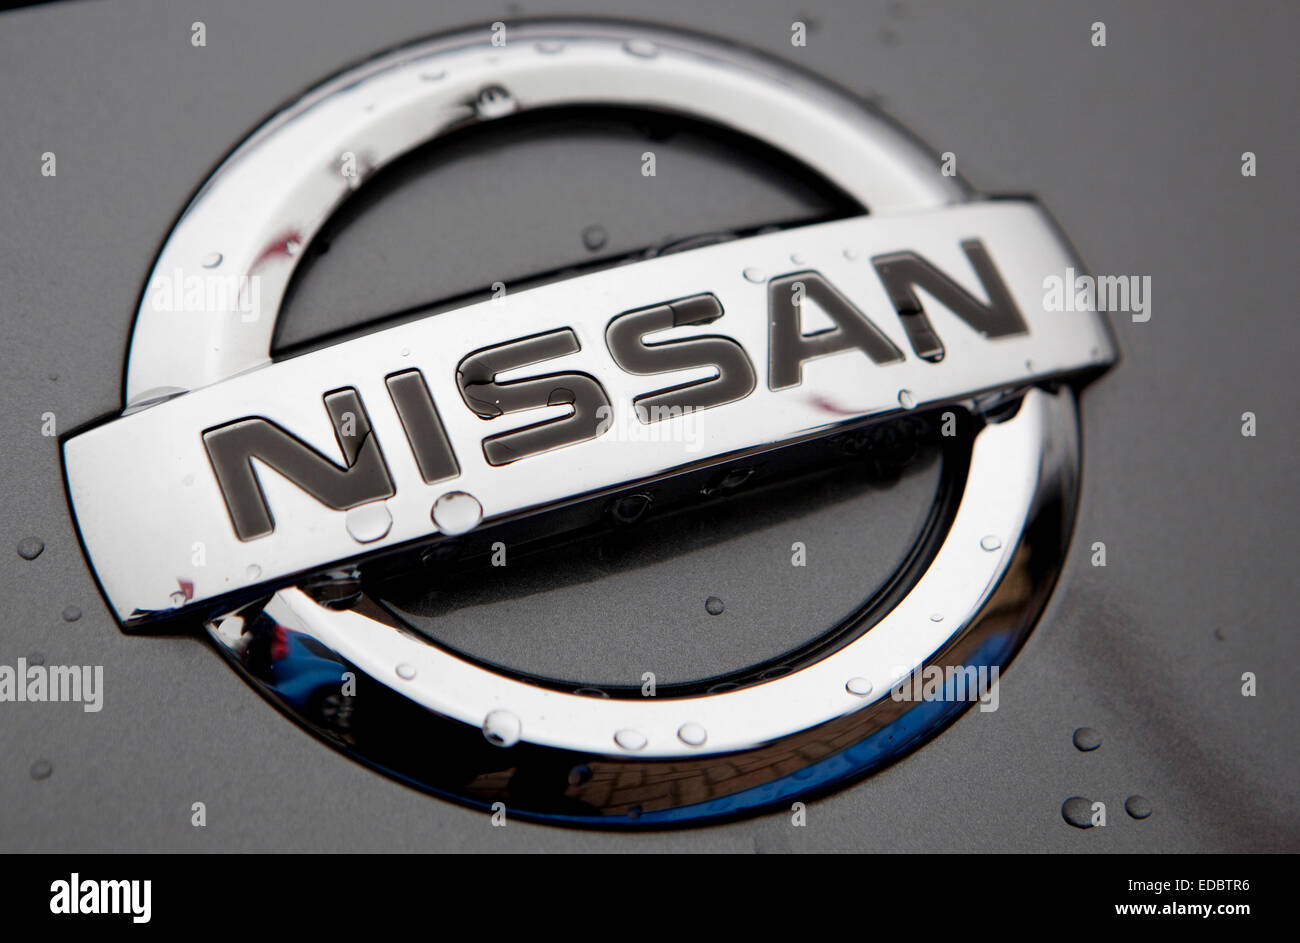 Immagine illustrativa di un logo Nissan, Cambridge. Foto Stock